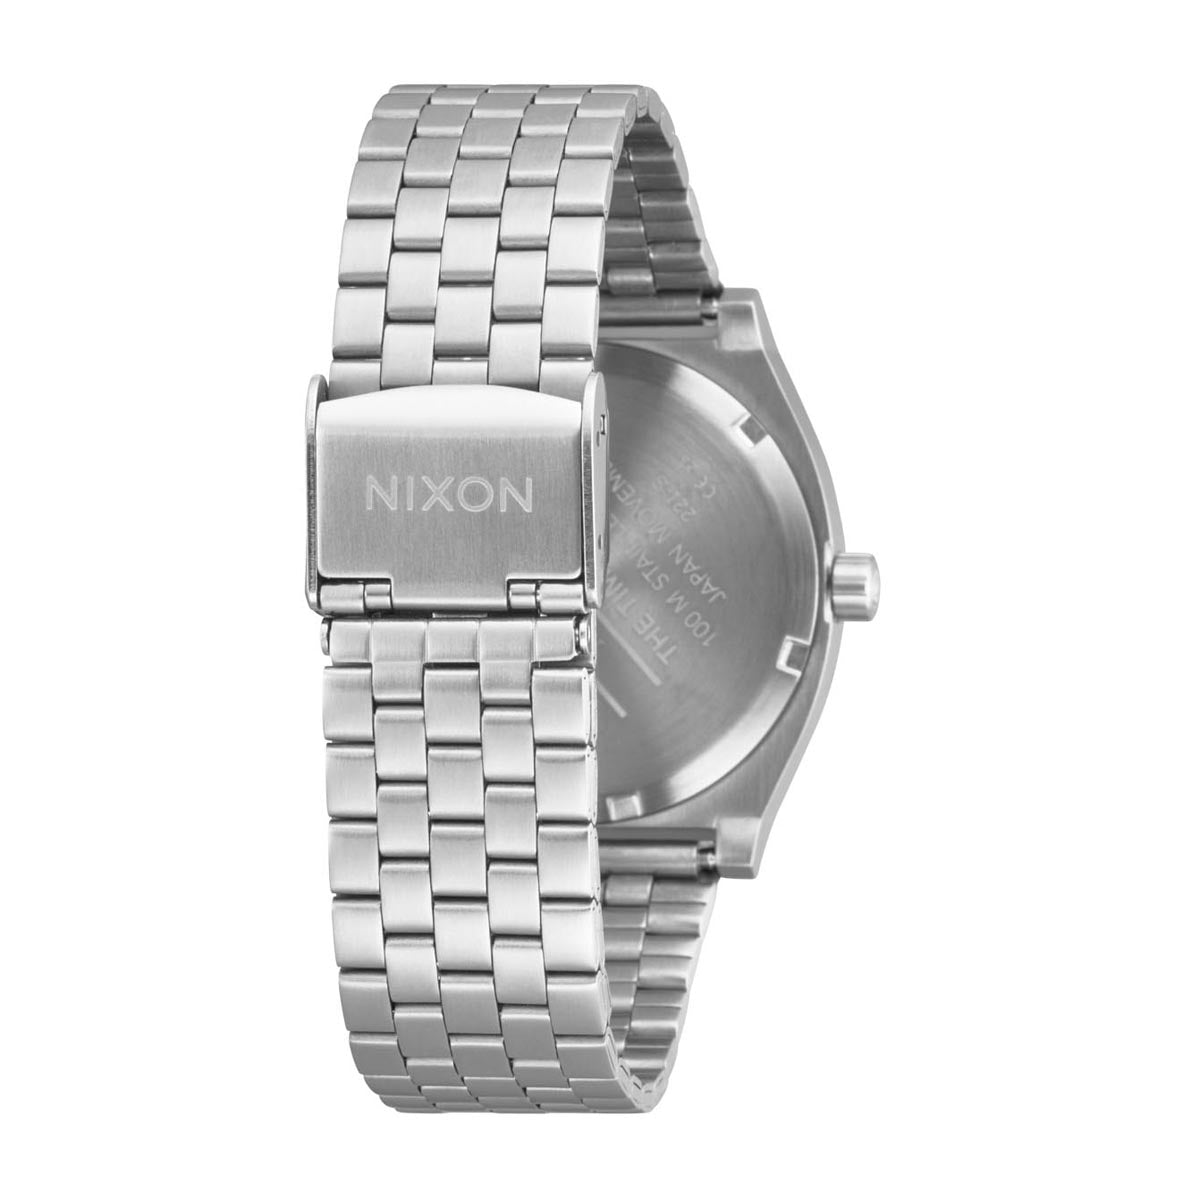 Nixon Time Teller Watch - Silver/Mandarin image 4